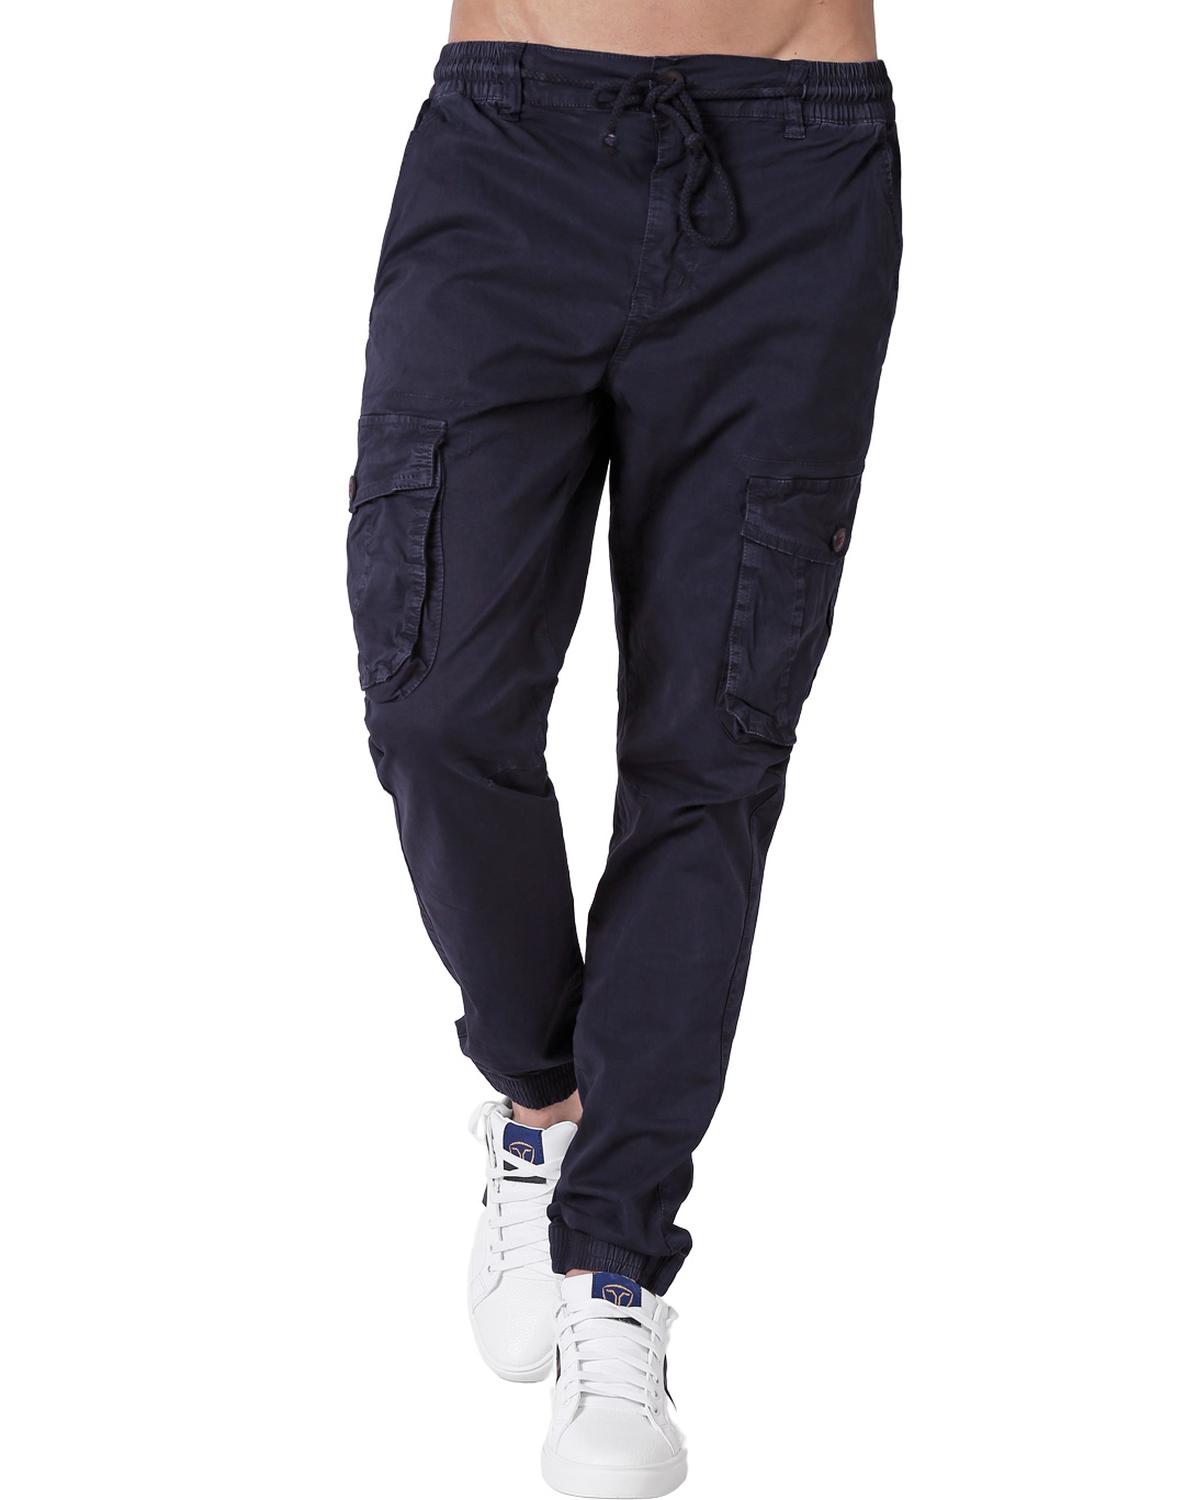 Pantalón Moda Jogger Hombre Azul Roosevelt 50104600